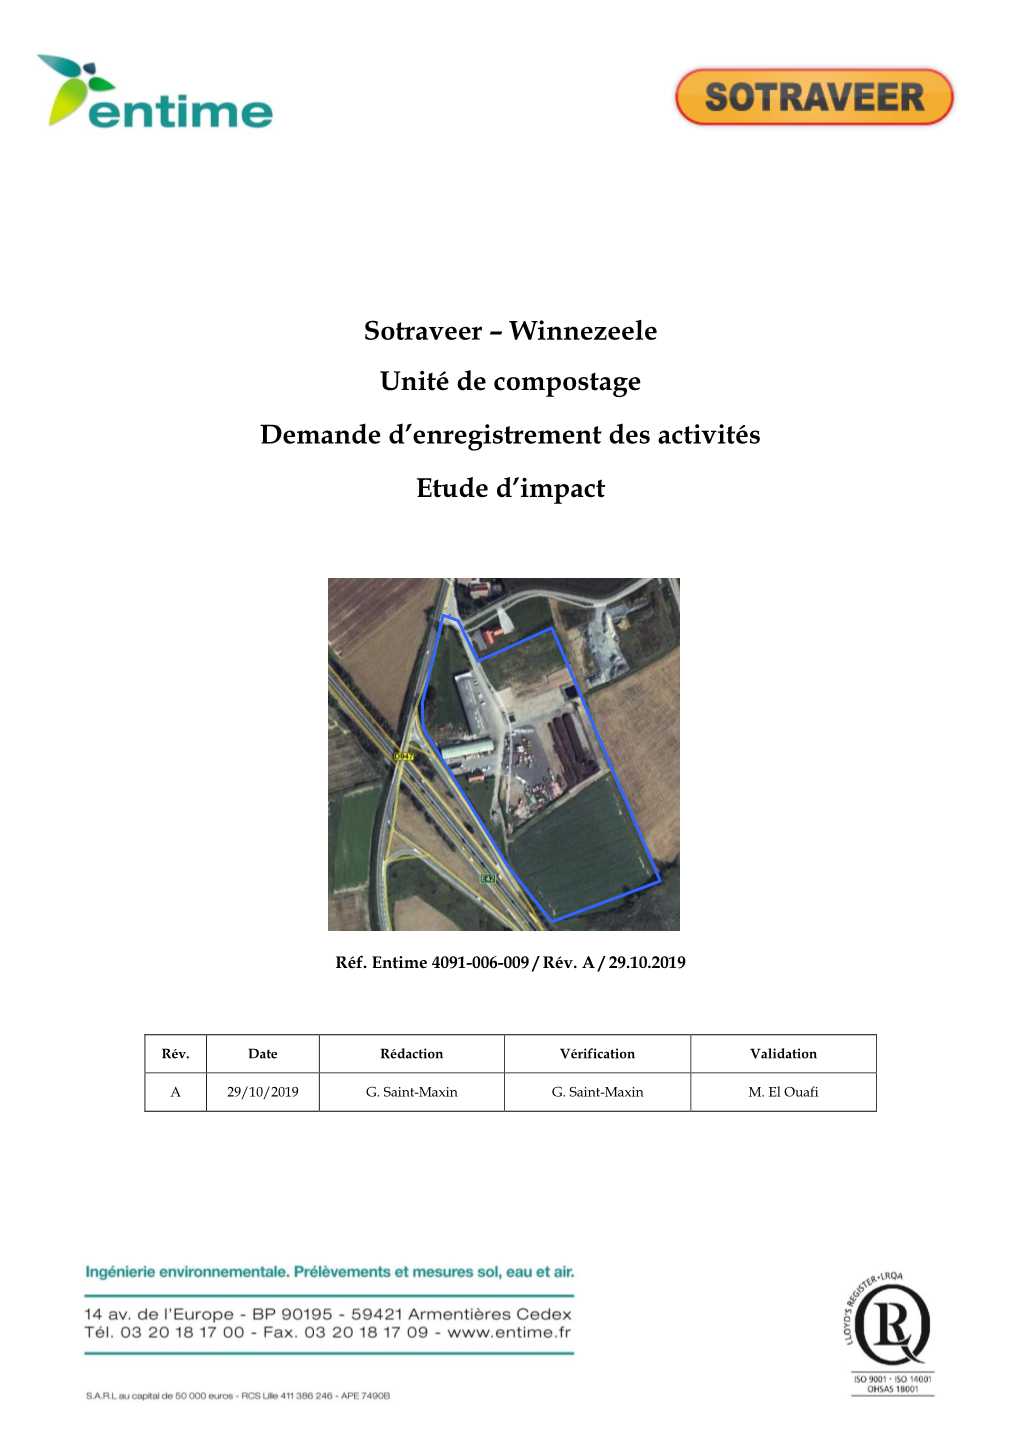 Sotraveer – Winnezeele Unité De Compostage Demande D'enregistrement Des Activités Etude D'impact